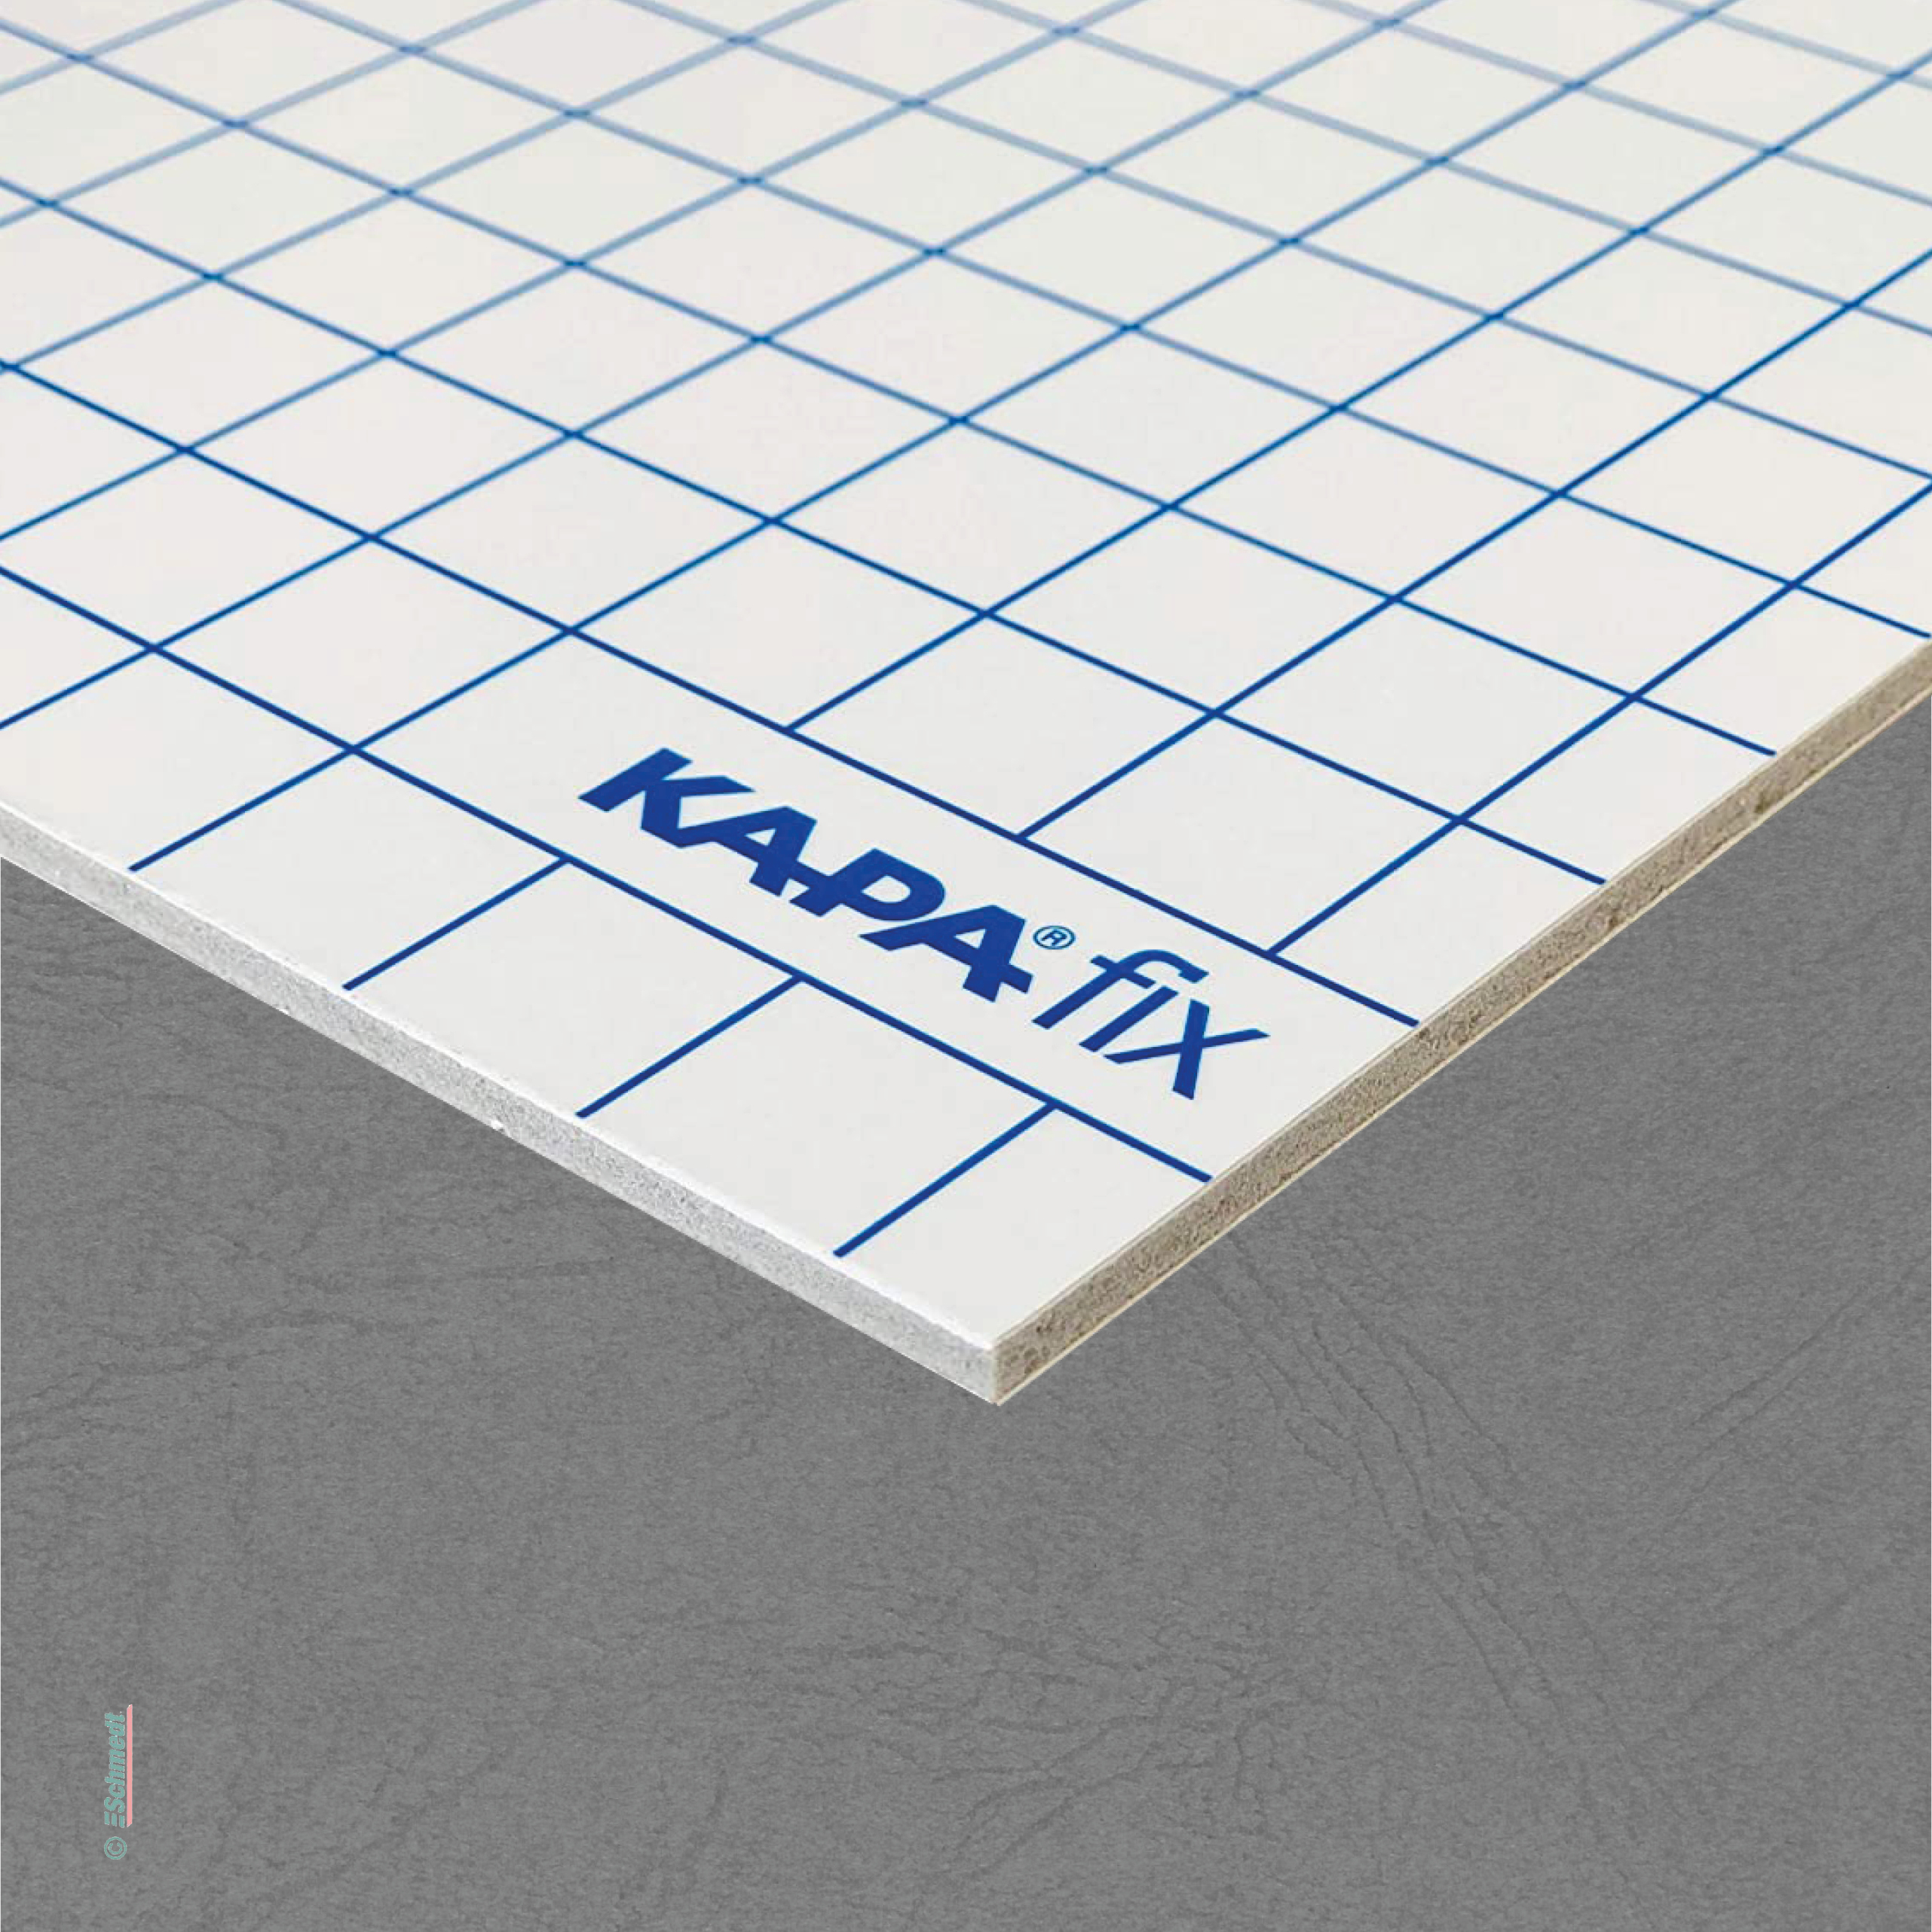 Leichtschaumplatten Kapa-Fix - einseitig selbstklebend - Schnellkaschierplatten für Digitaldrucke, Fotos, Drucke, Pläne, nicht selbstklebend...